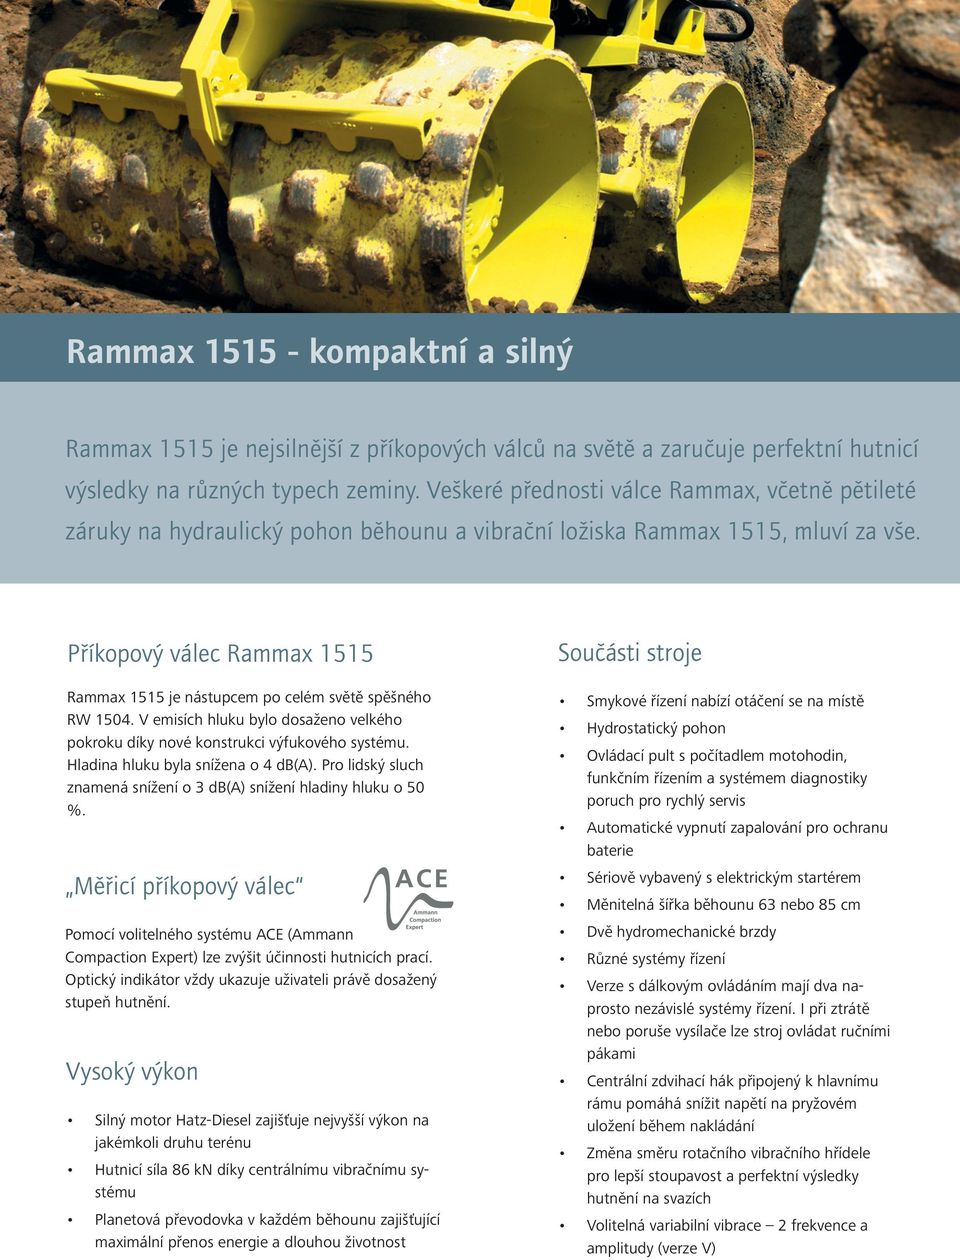 Příkopový válec Rammax 1515 Rammax 1515 je nástupcem po celém světě spěšného RW 1504. V emisích hluku bylo dosaženo velkého pokroku díky nové konstrukci výfukového systému.